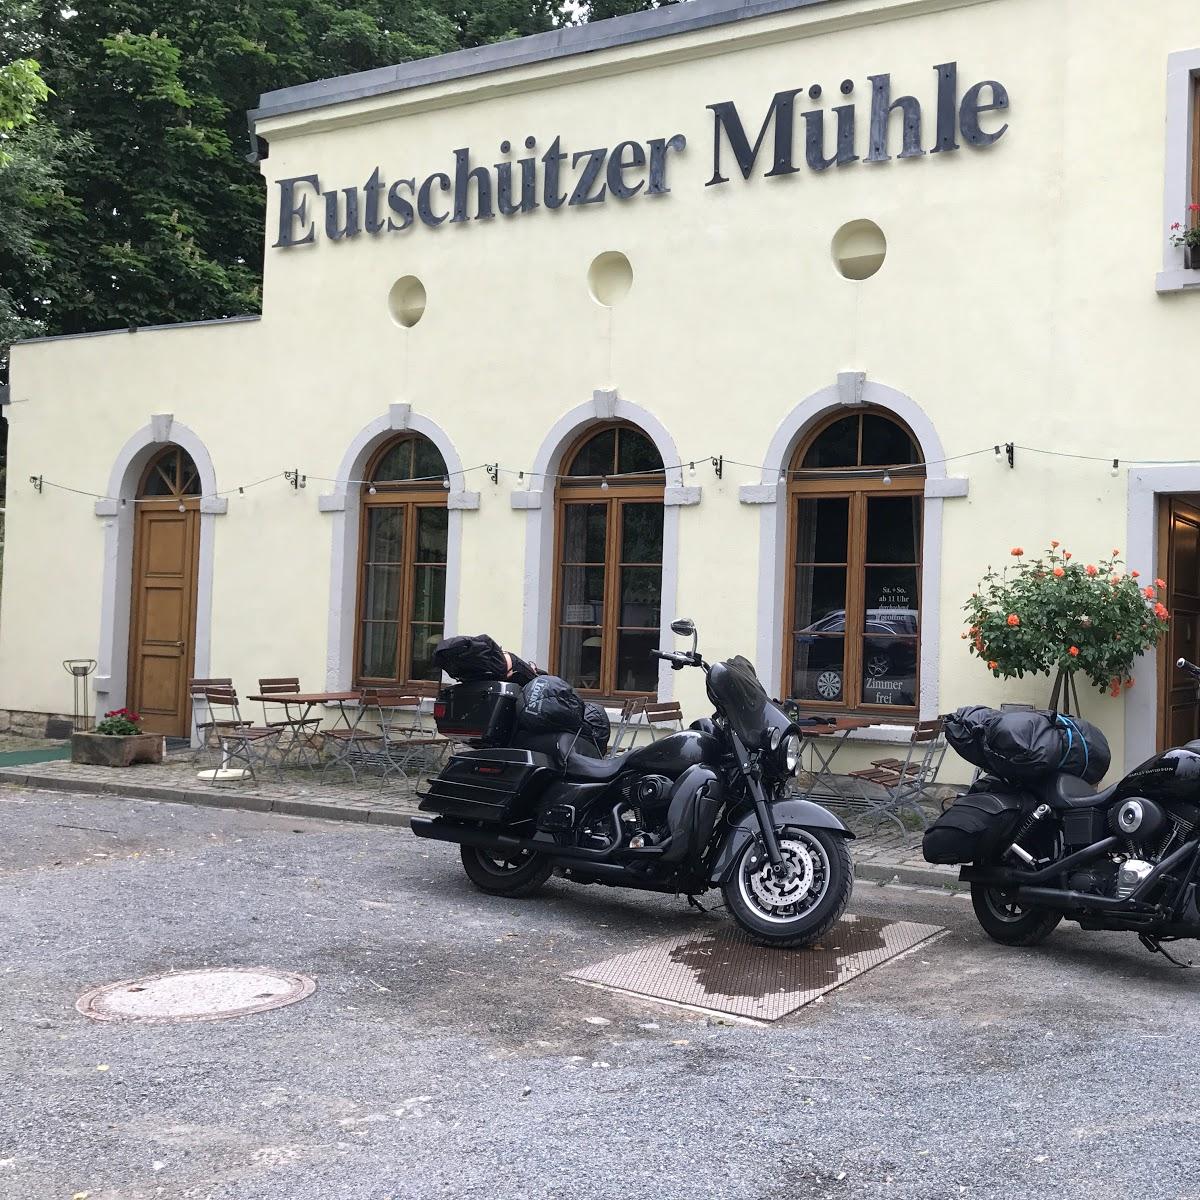 Restaurant "Eutschützer Mühle" in Bannewitz